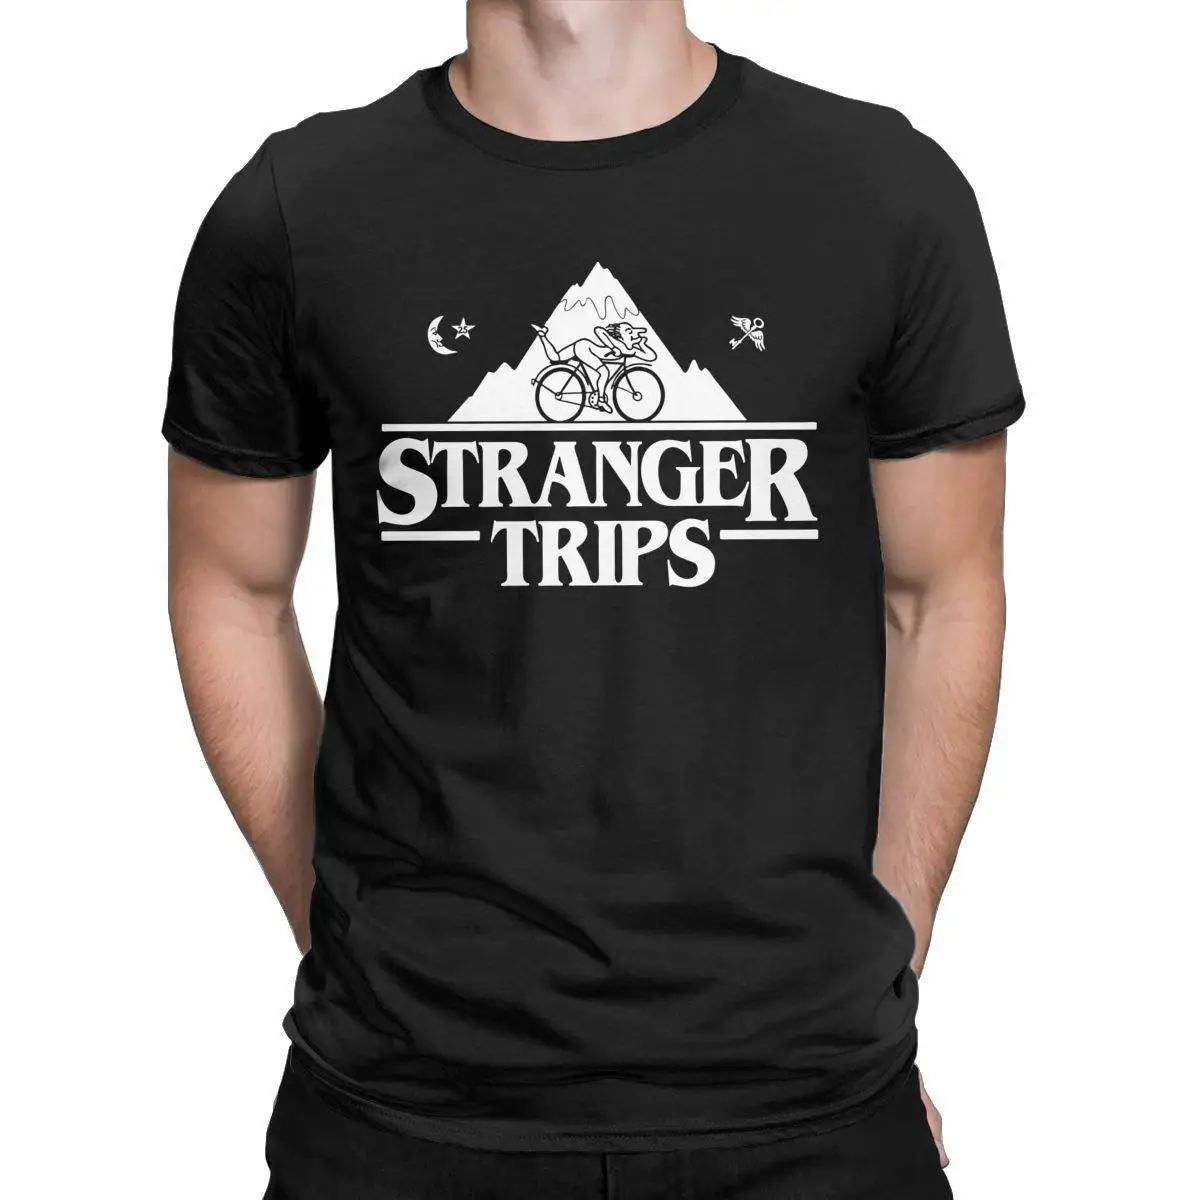 Stranger Trips Albert Hofmann LSD T Shirt for Men Pure Cotton T-Shirts Crew Neck Bike Cycling Tee Shirt Short Sleeve Tops